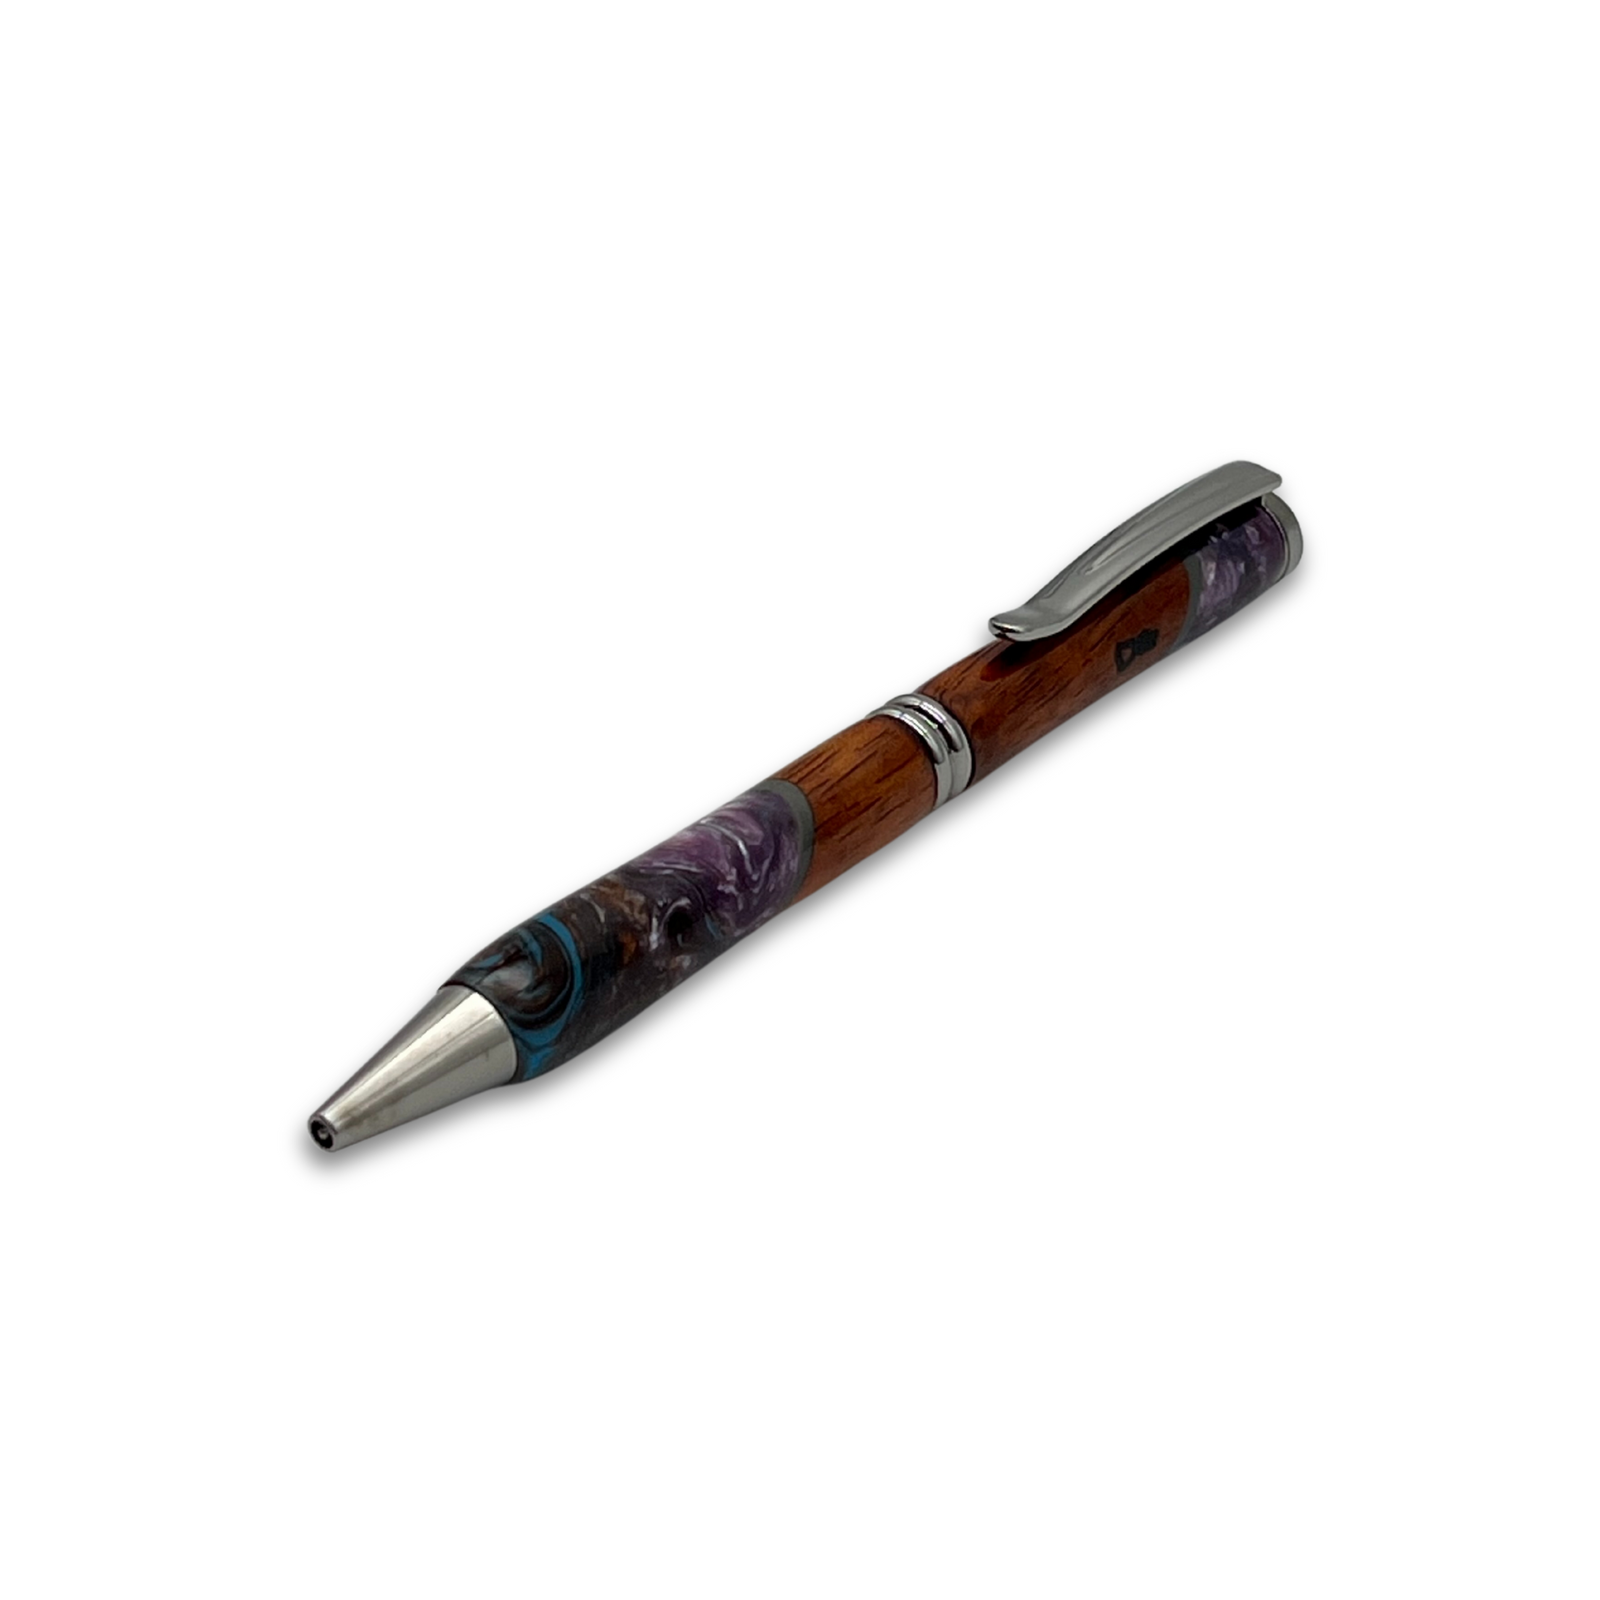 Pop-Up Mākeke - Lau Lau Woodworks - Designer Simplicity Ballpoint Pen - Style #1 - Front View